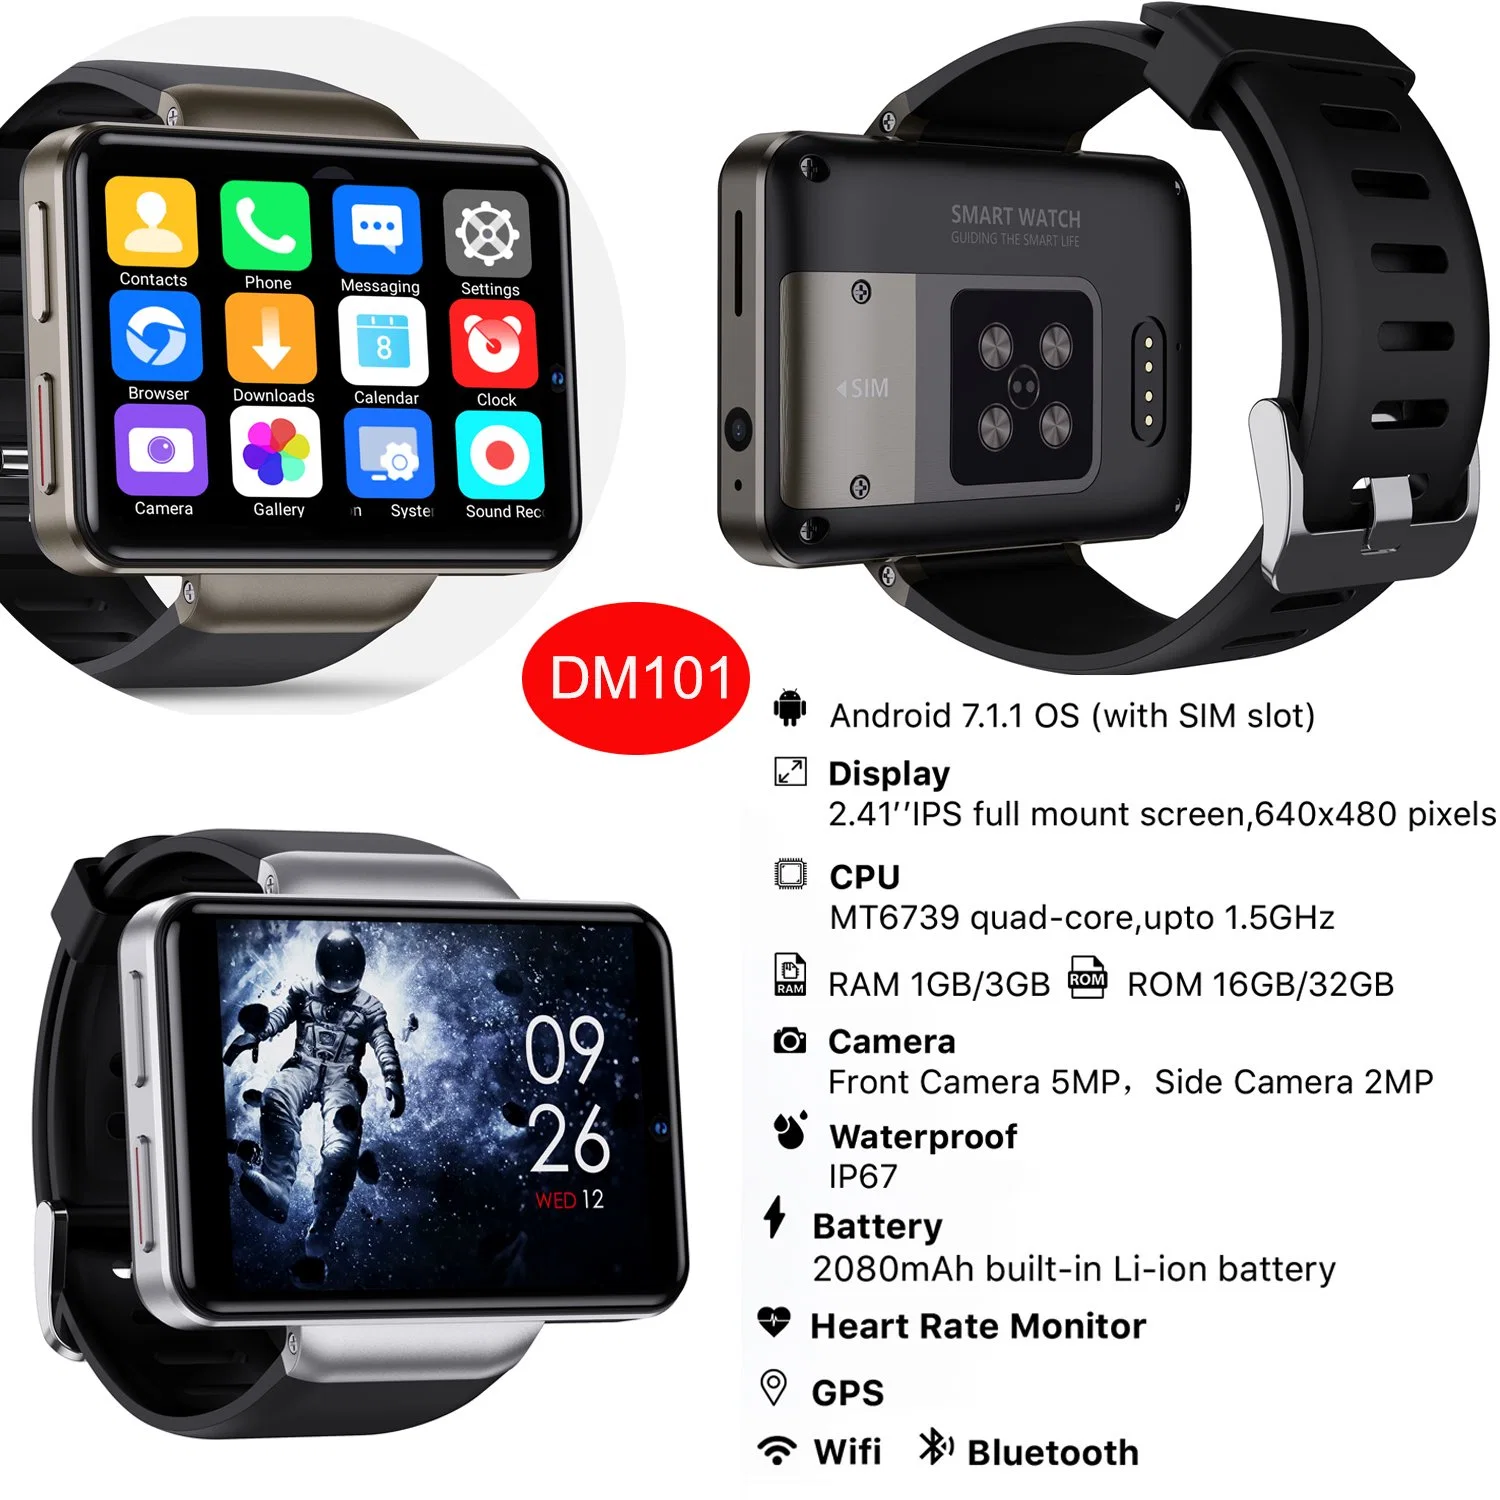 Neu Smartwatch IP67 Wasserdichte GPS 2,41inch Android Smart Watch 4G Mobiltelefon mit WiFi-Videoanrufen Herzfrequenzsensor DM101